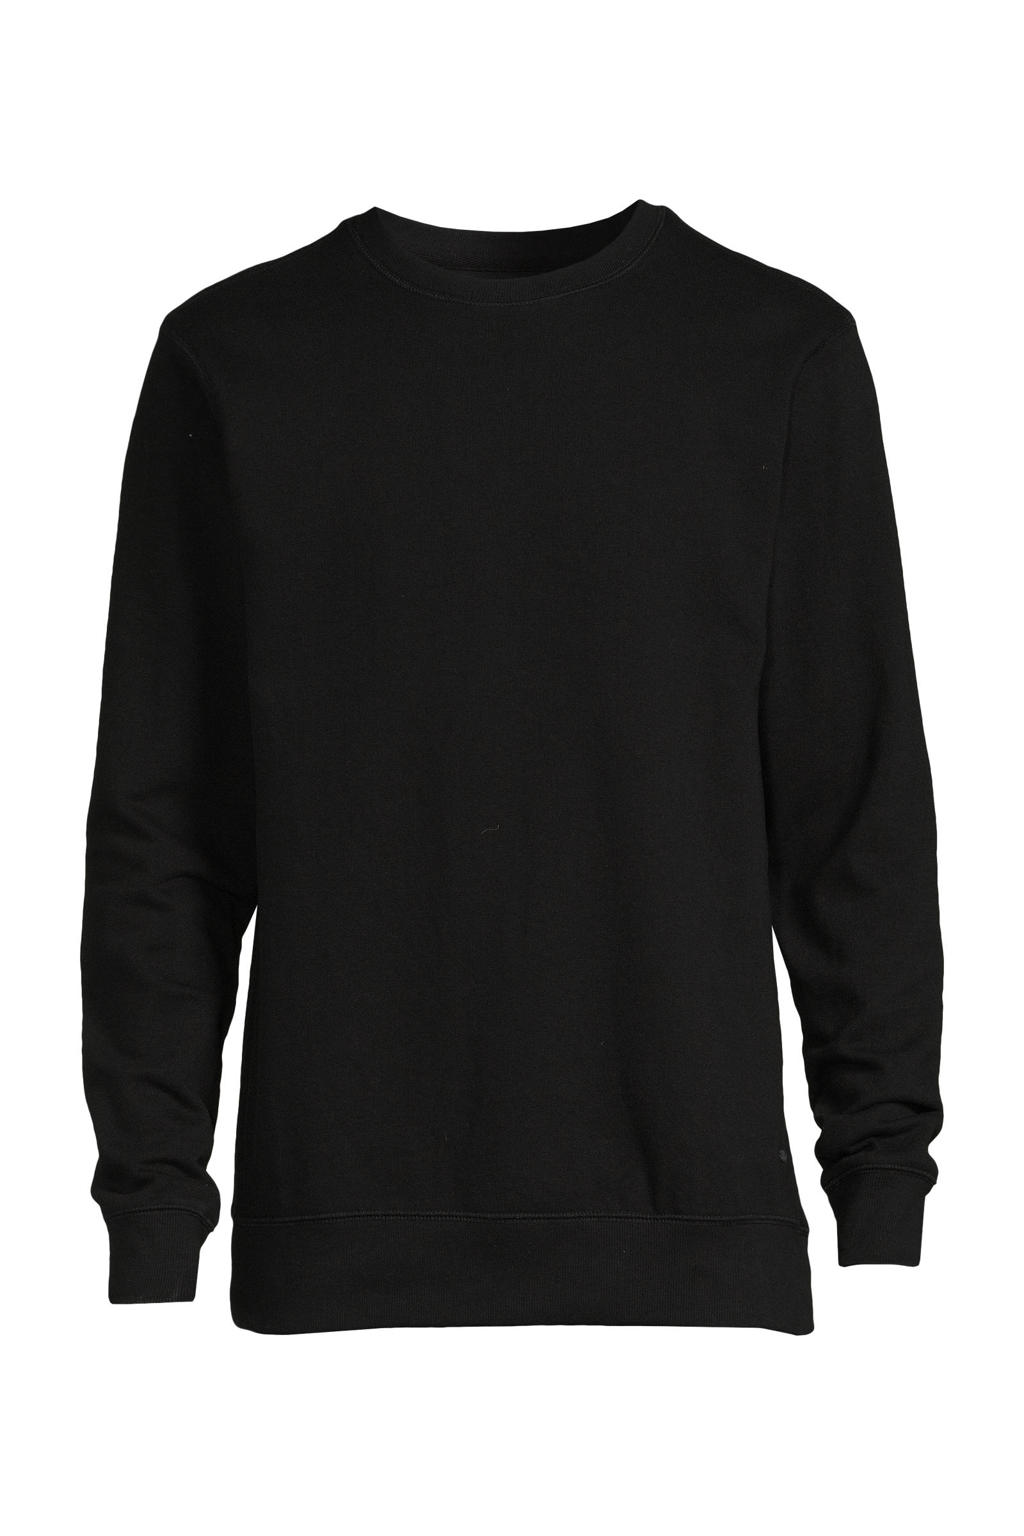 Petrol Industries gemêleerde sweater black